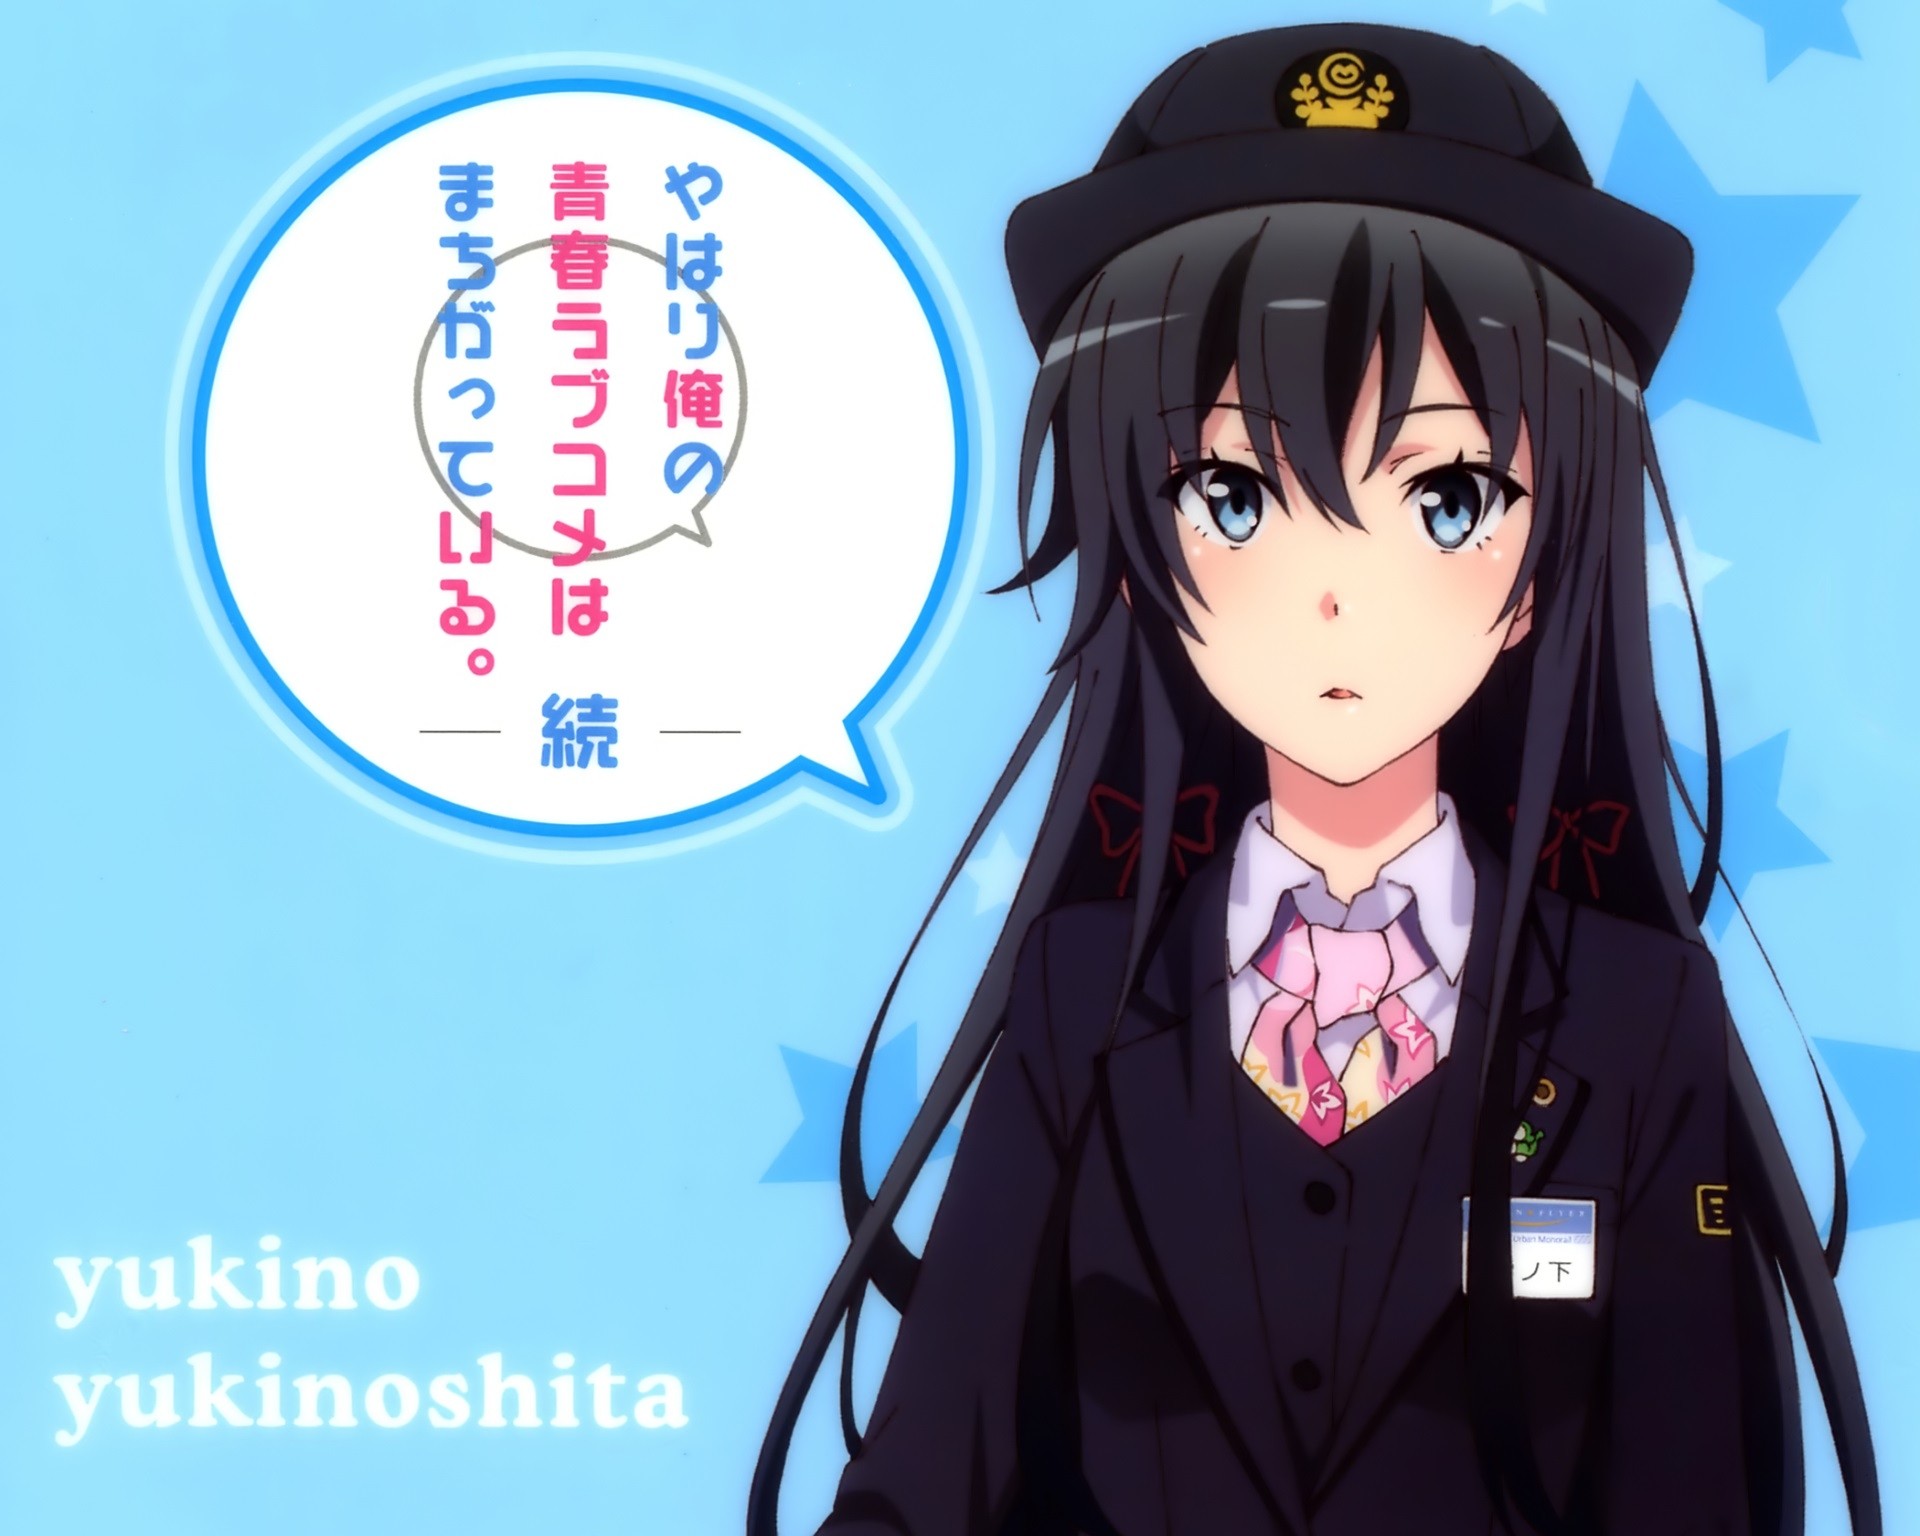 Anime 1920x1536 Yahari Ore no Seishun Love Comedy wa Machigatteiru anime girls Yukinoshita Yukino hat uniform